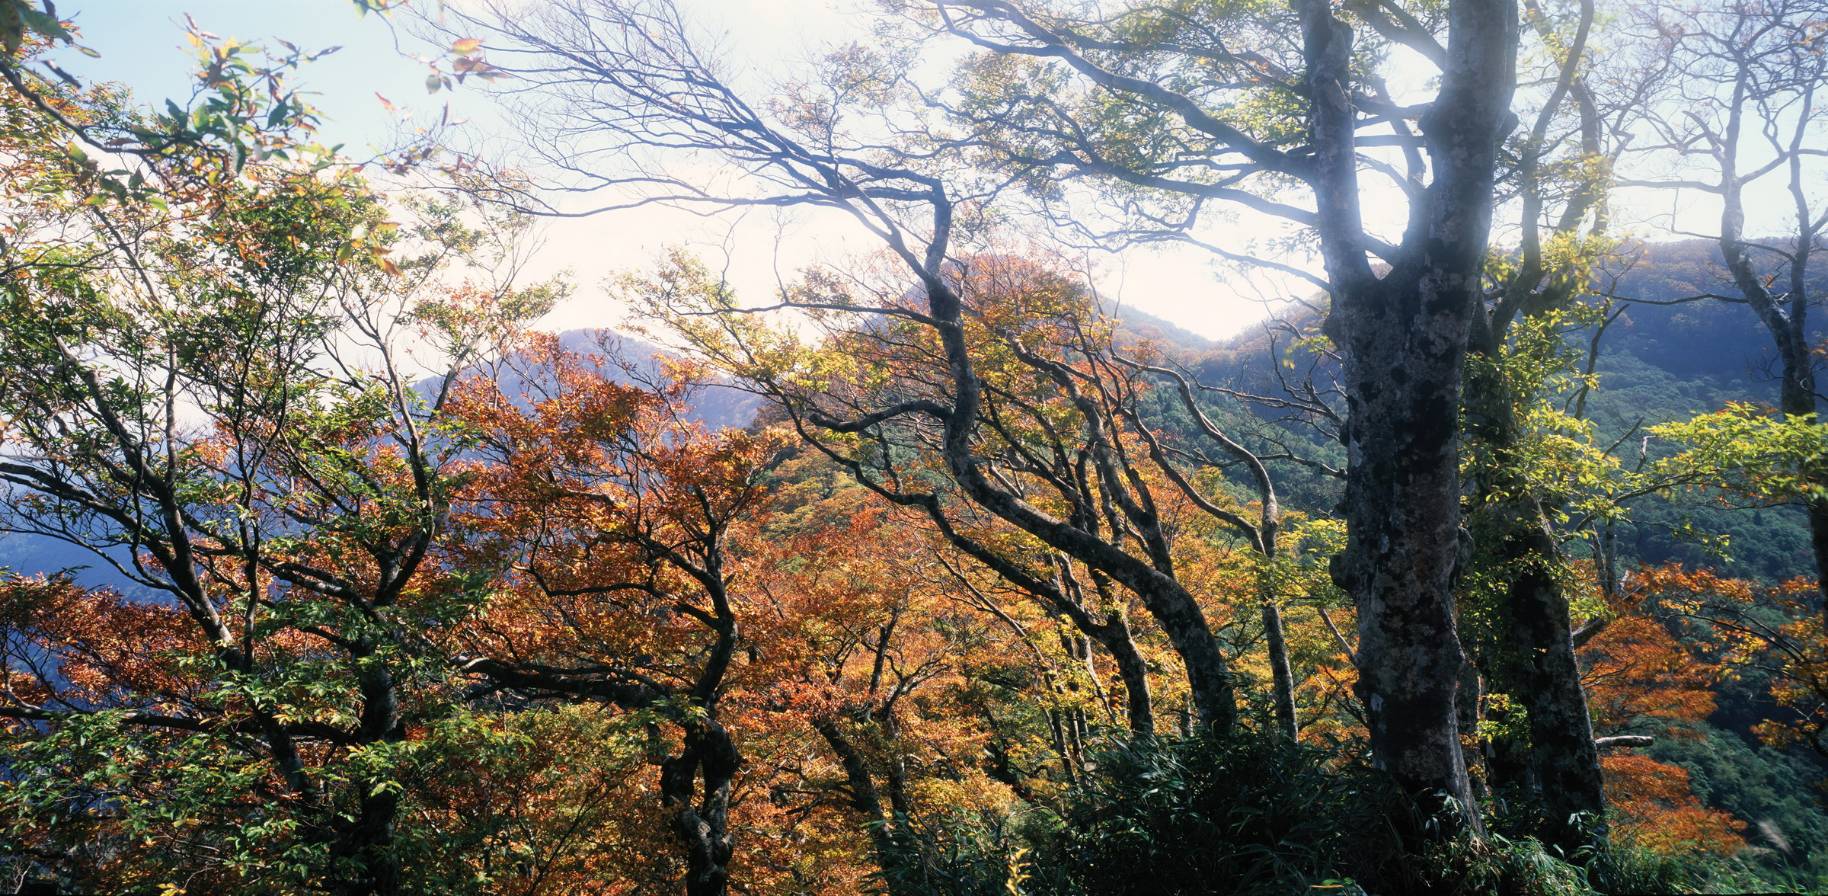 太平山國家森林遊樂區